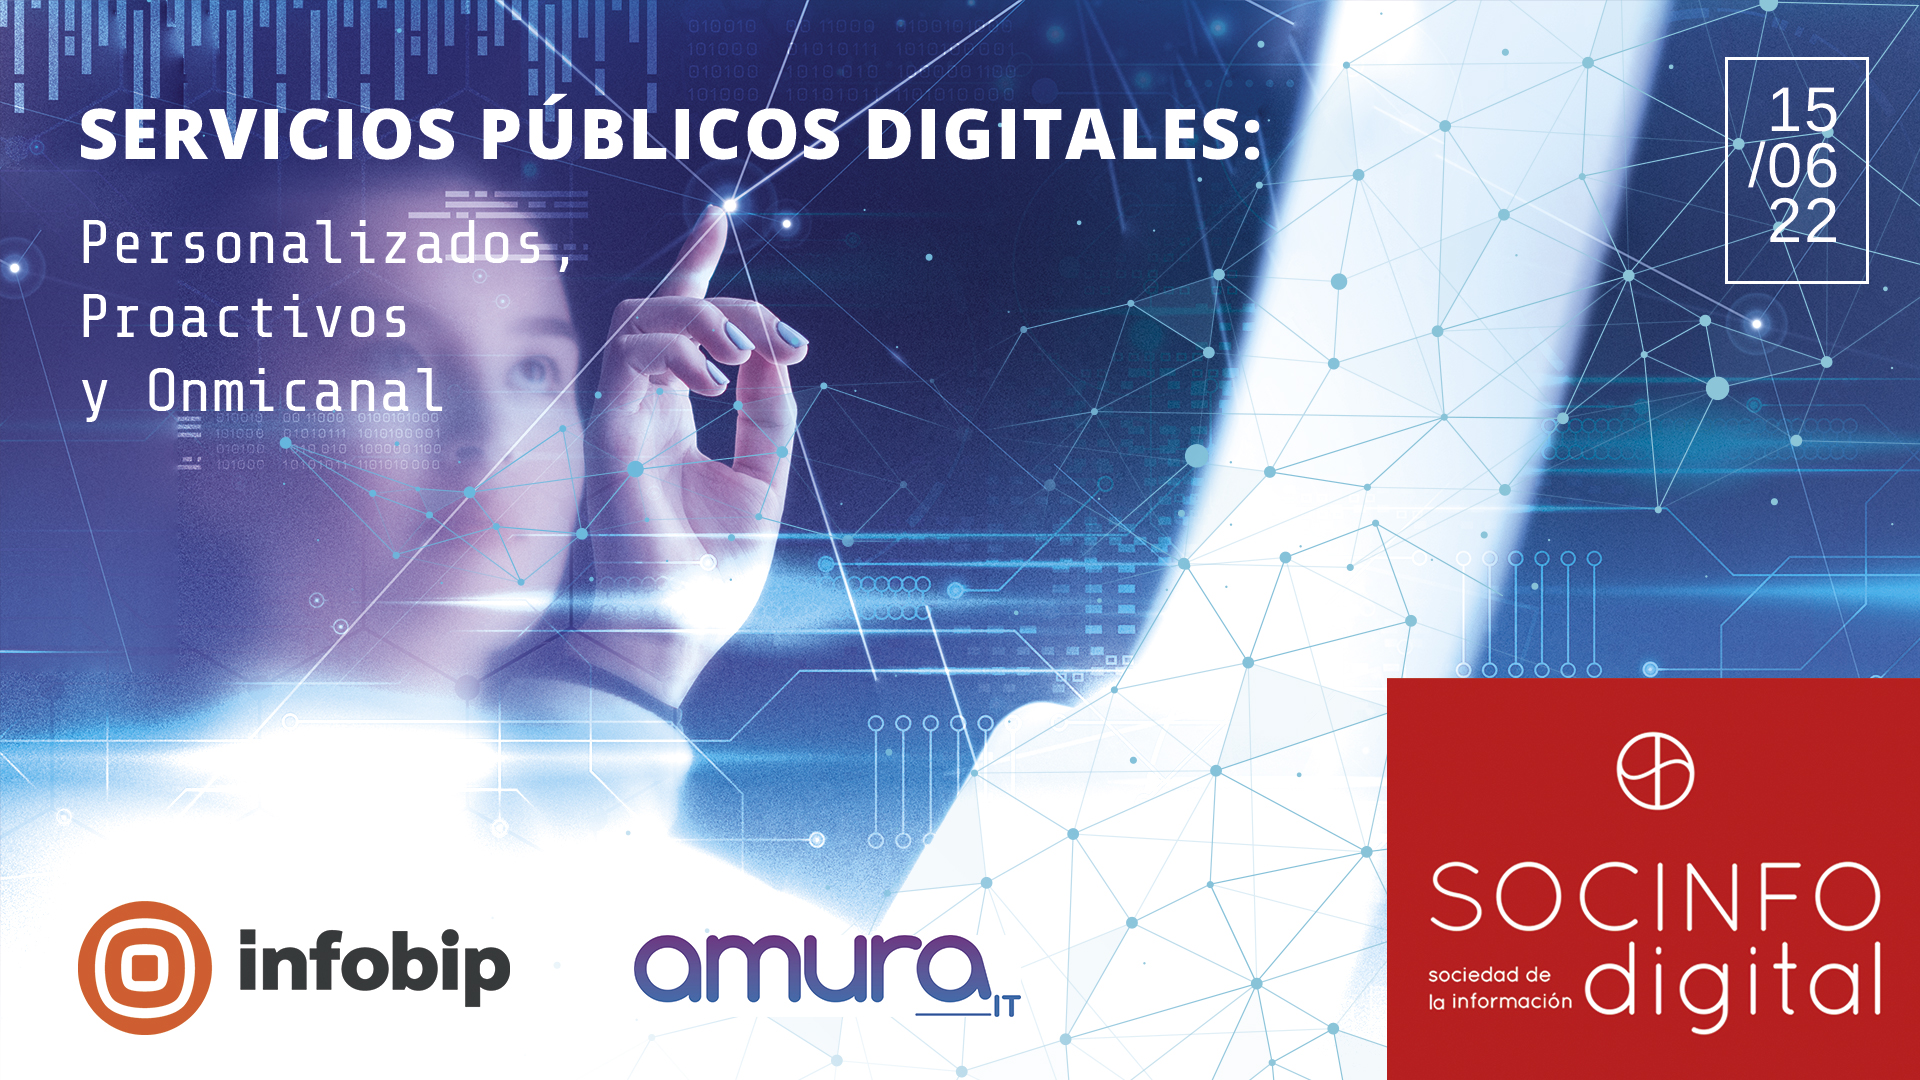 Servicios Públicos Digitales: personalizados, proactivos y onmicanal